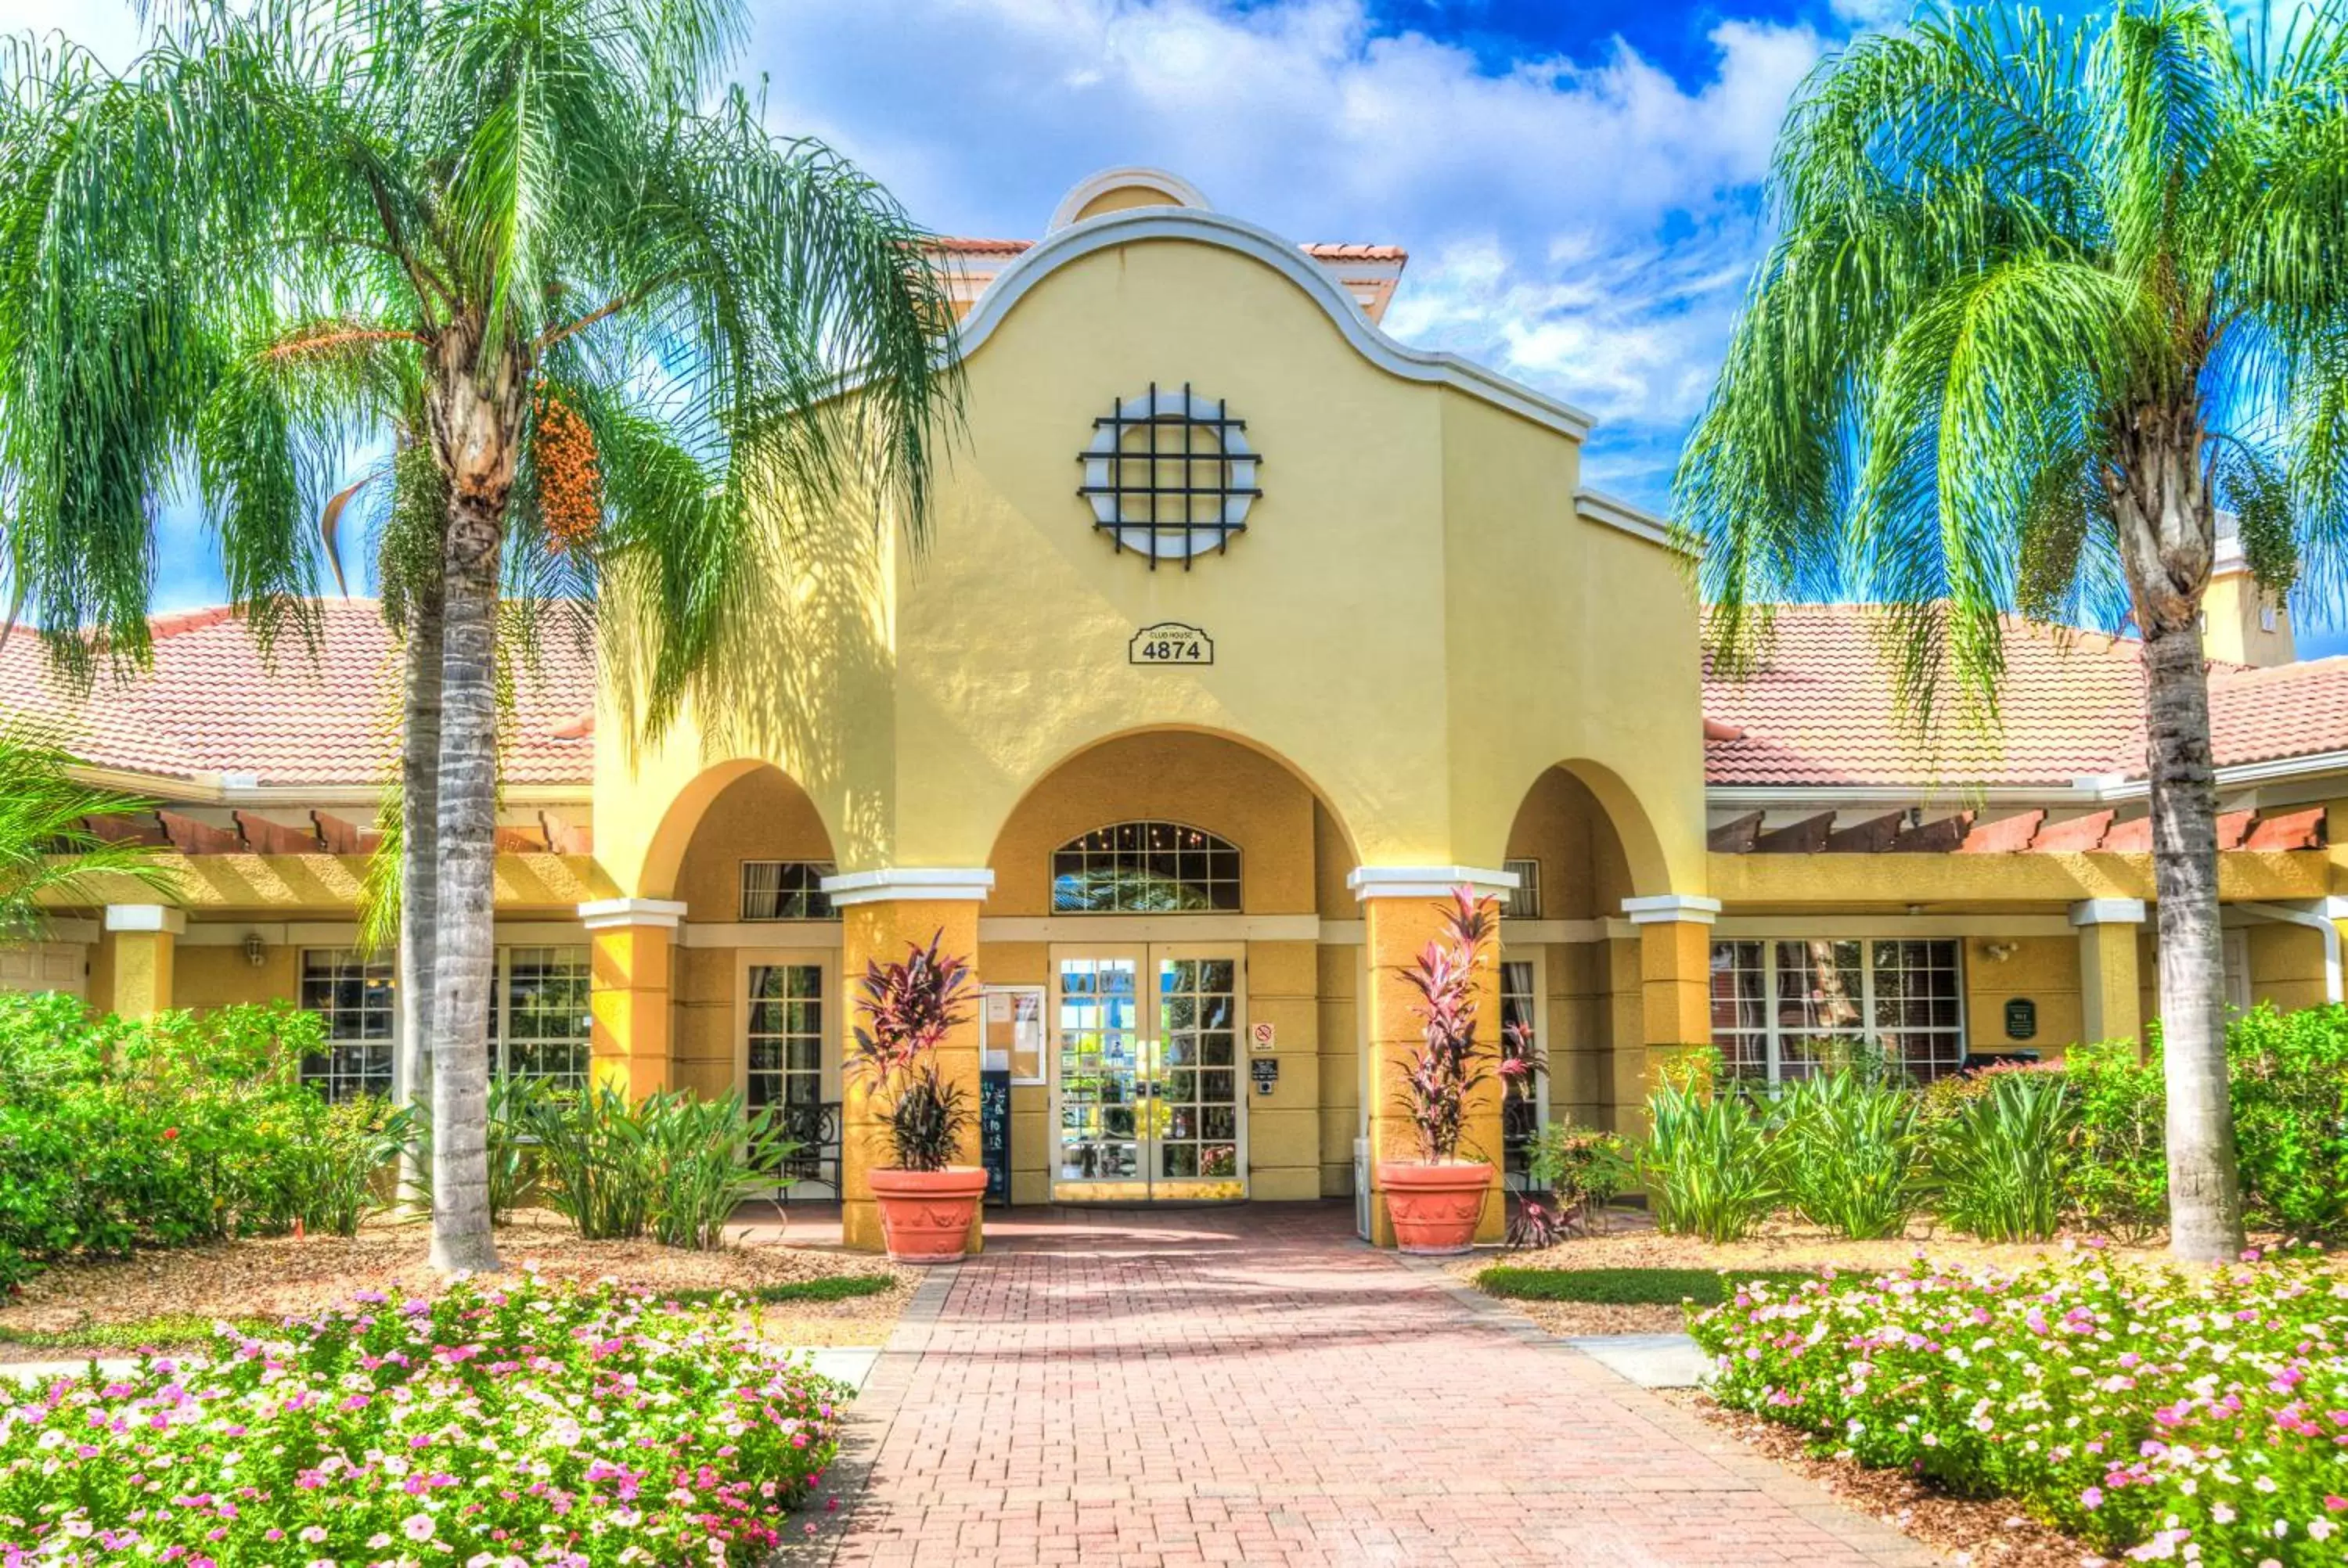 Property building, Garden in Orlando Escape